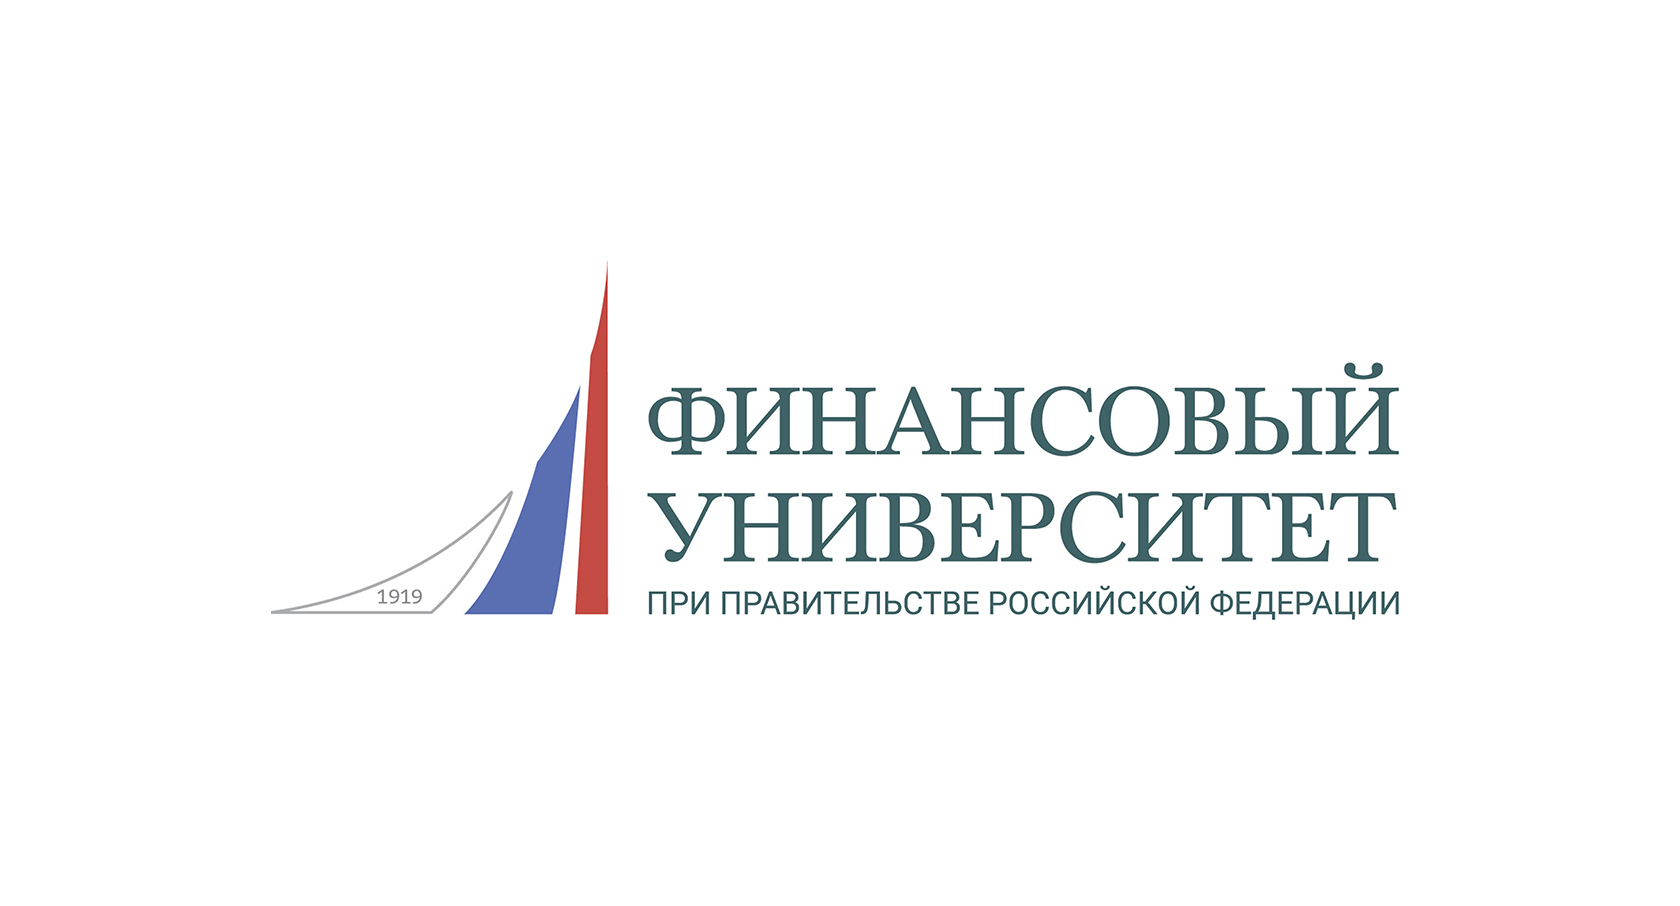 Владимирский финансовый университет при правительстве рф